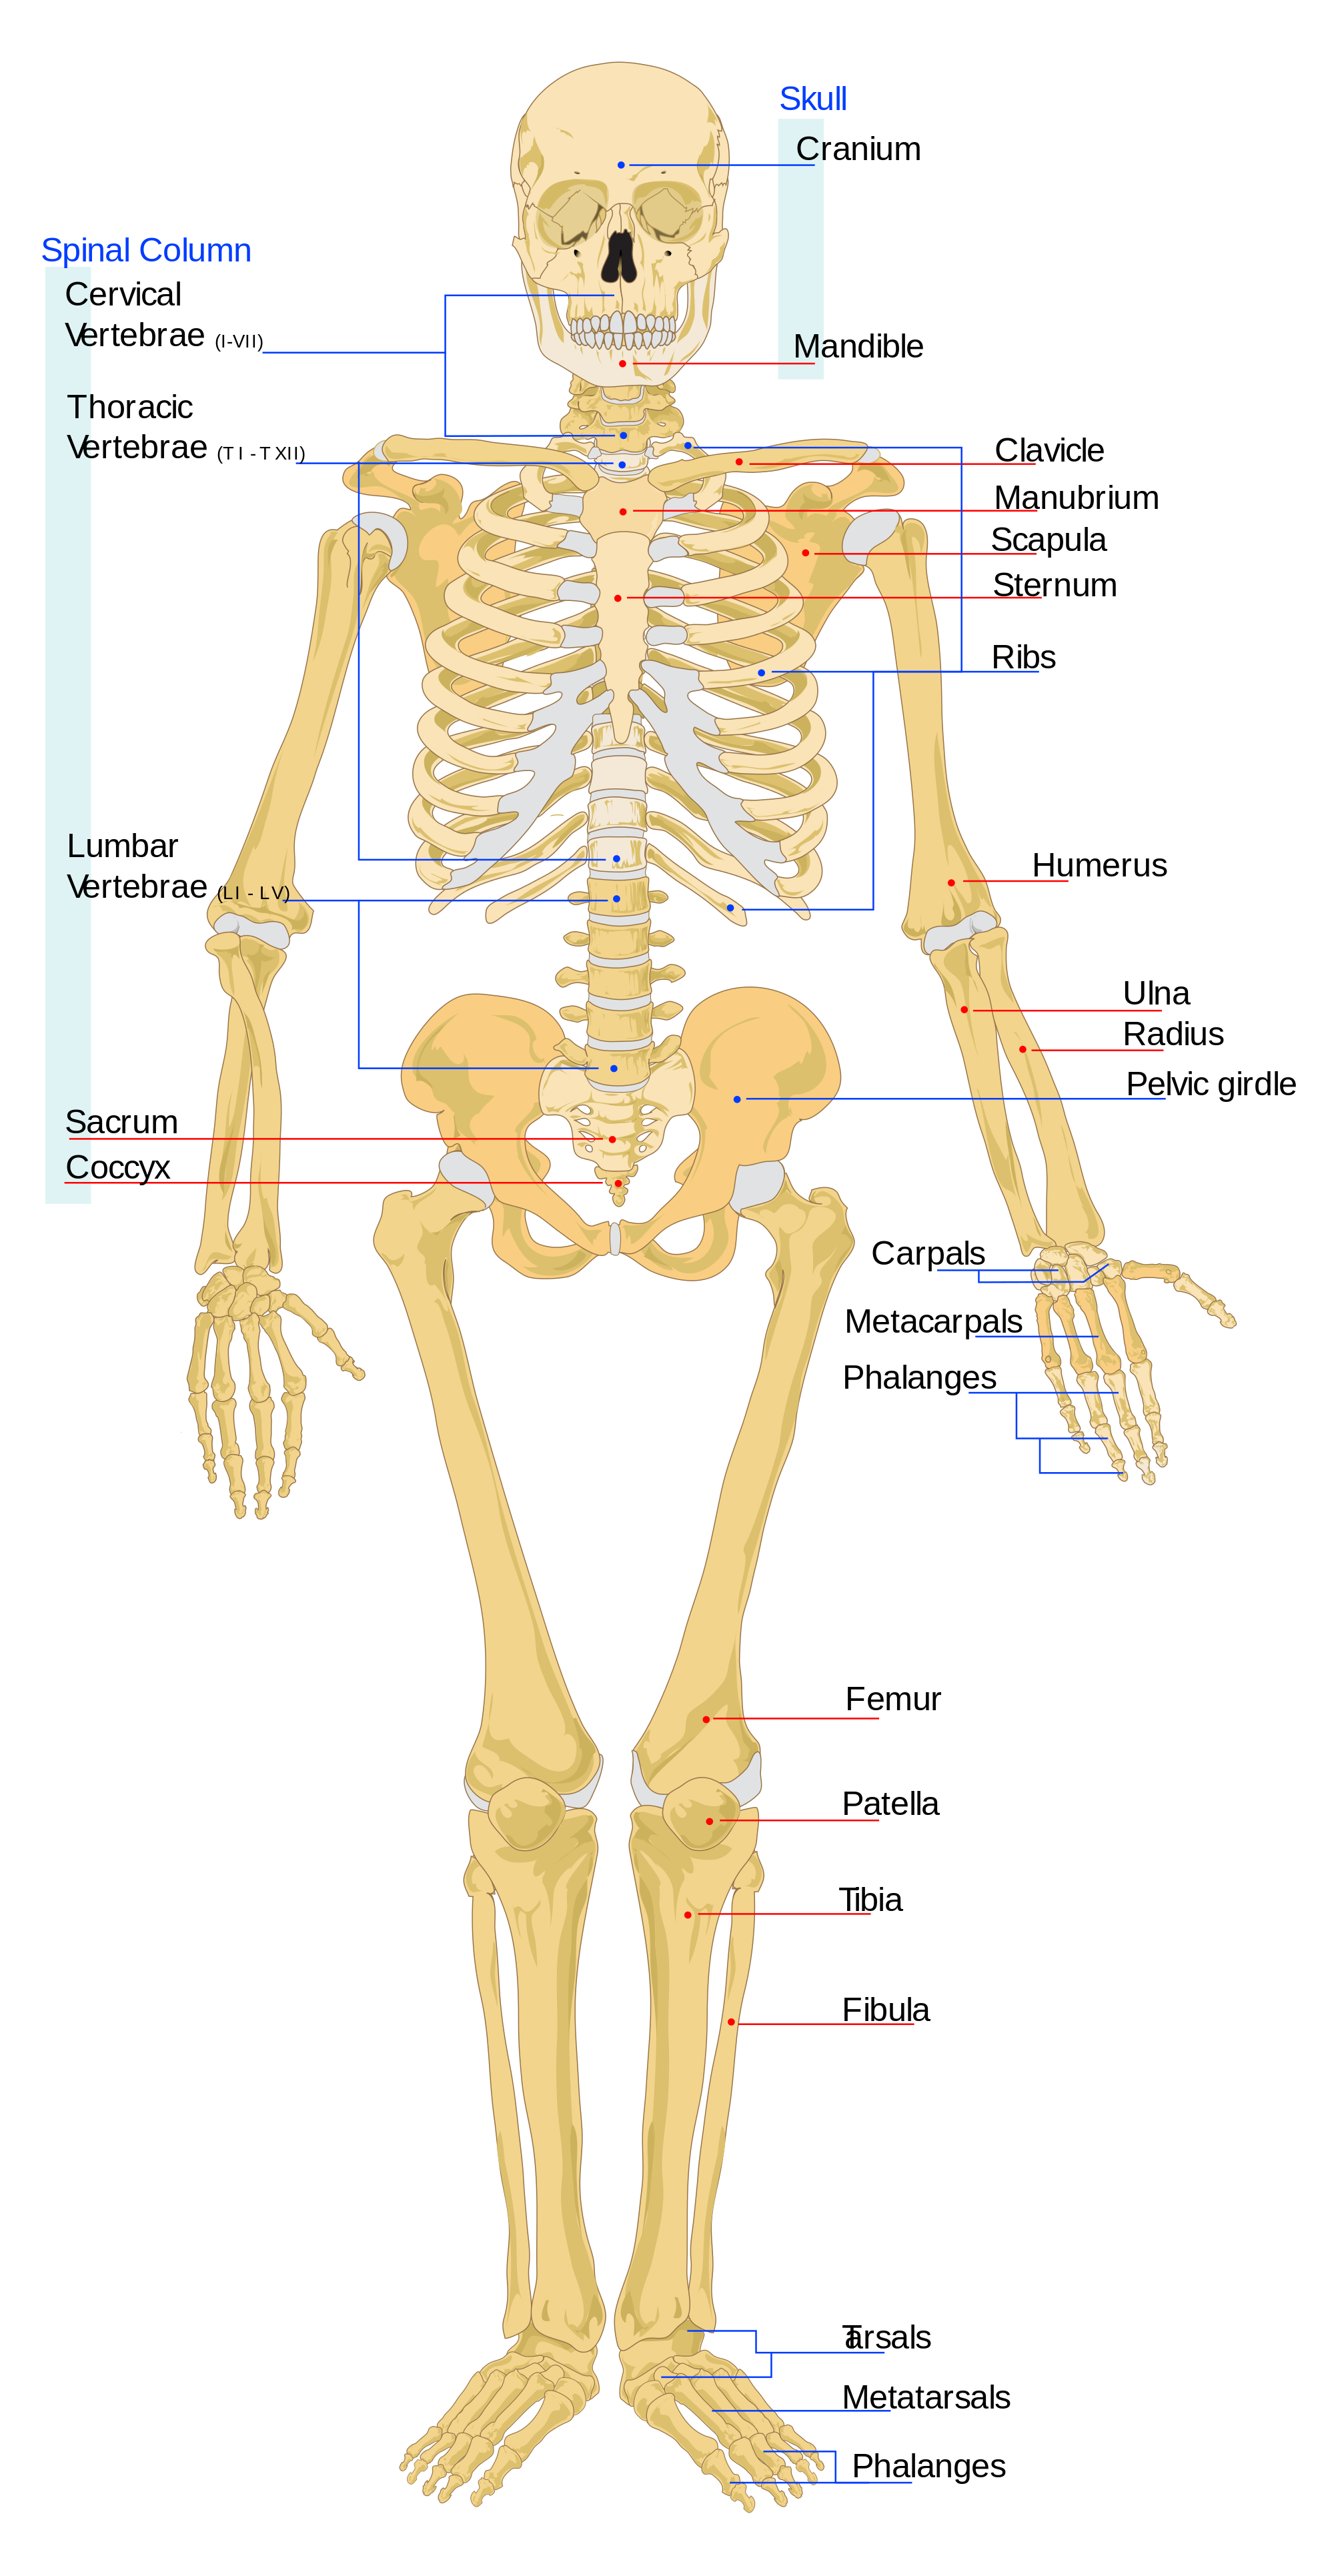 Pelvis - Female highlighting normal anatomical bones. Shown are the ilium, iliac  crest, sacrum, coccyx, superior pubic ramus, inferior pubic ramus, and  femurs. Stock Illustration